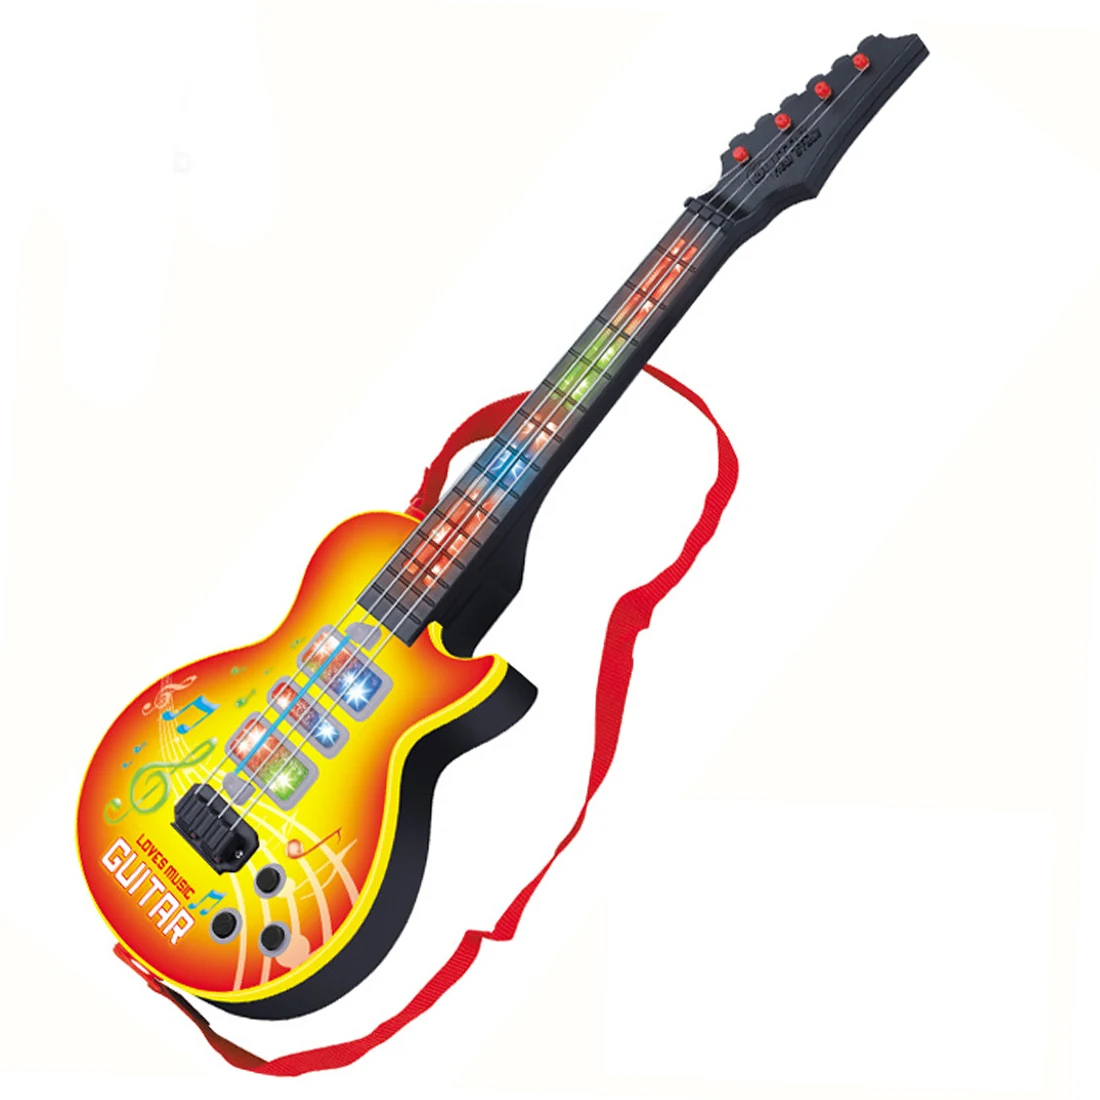 Hiqh рекомендуем 4 струны музыкальная электрическая игрушечная гитара Музыкальные инструменты Обучающие Для детей Juguetes подарок на год и день рождения - Цвет: Цвет: желтый